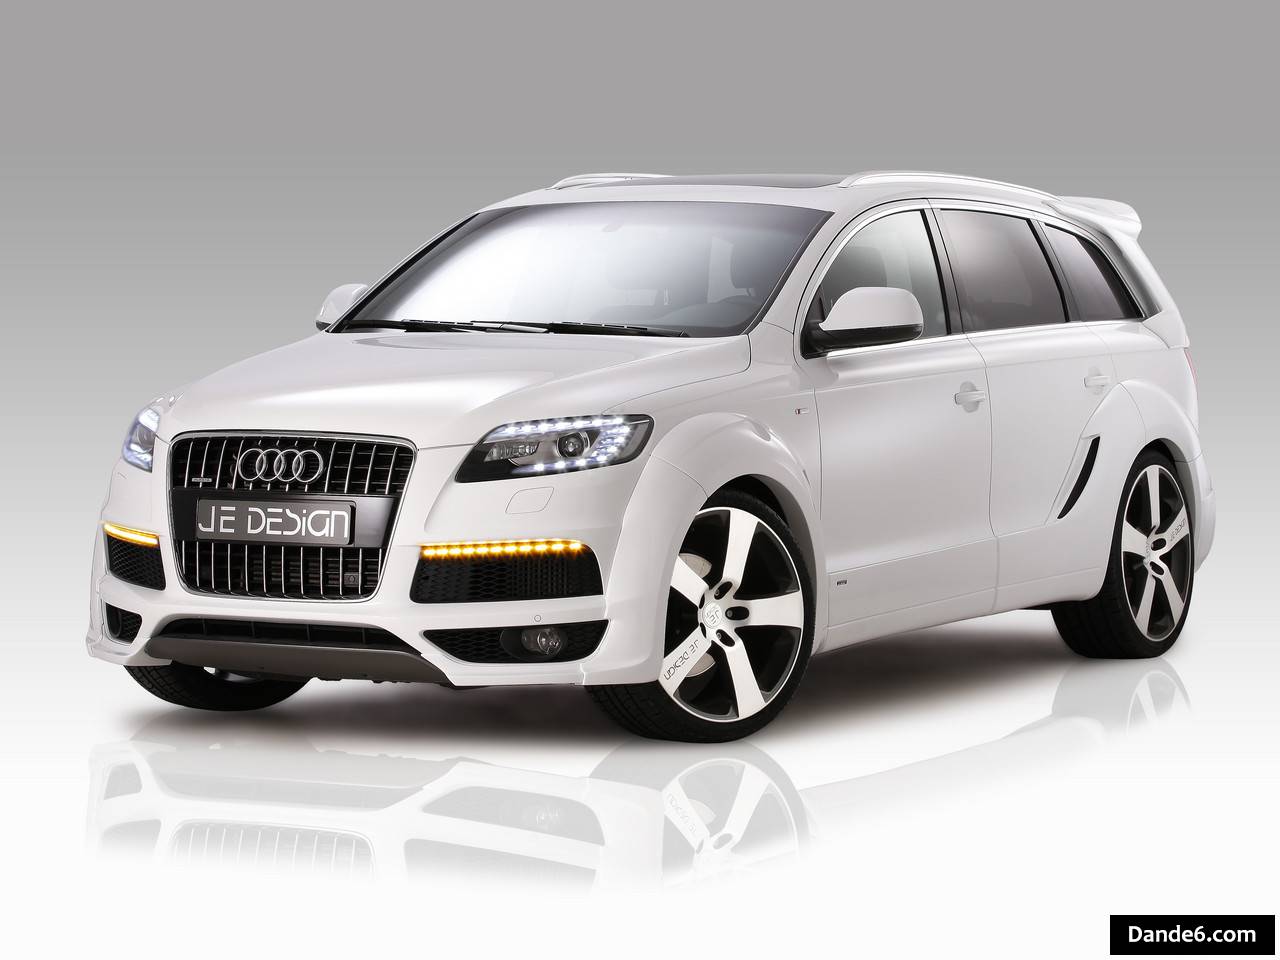 2012 JE DESIGN Audi Q7 S-Line